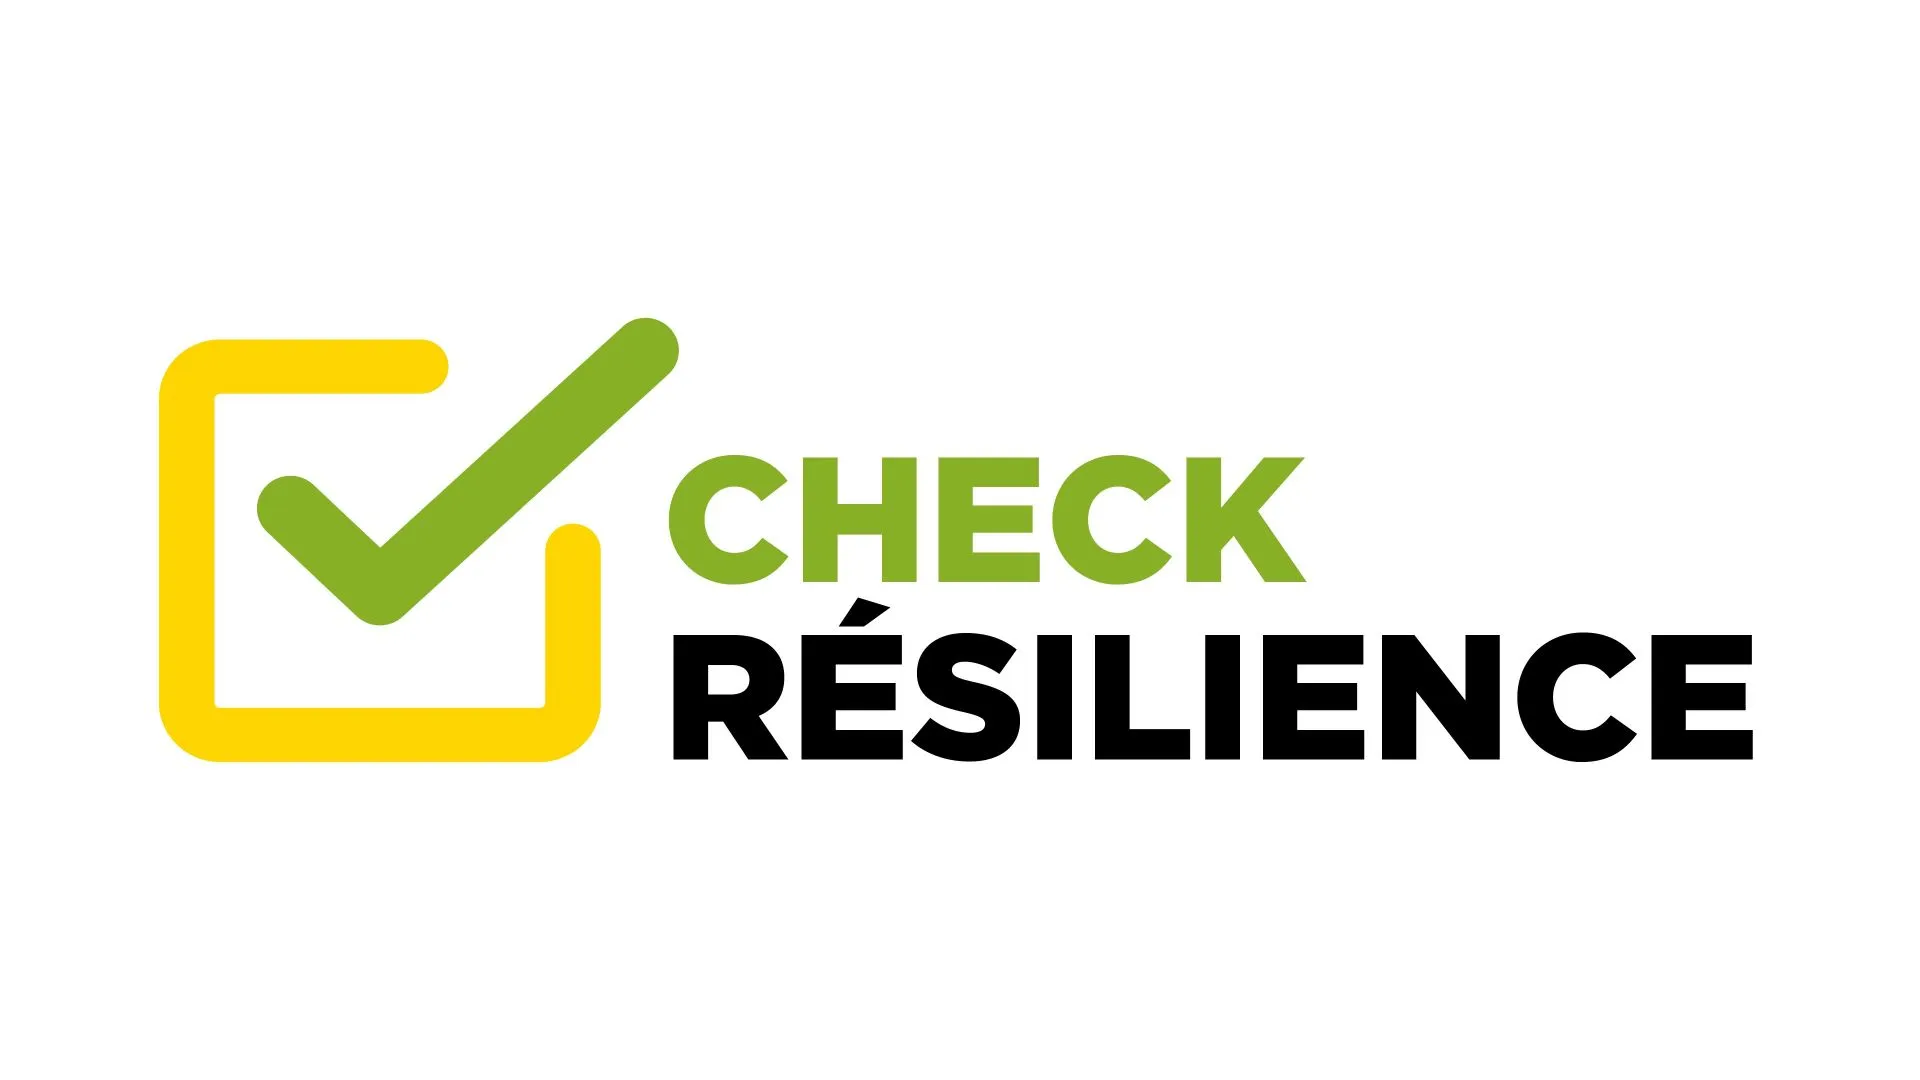 Le Check Résilience de la Chambre des Métiers - Un autocontrôle pour les entreprises afin d'augmenter leur résistance face aux crises